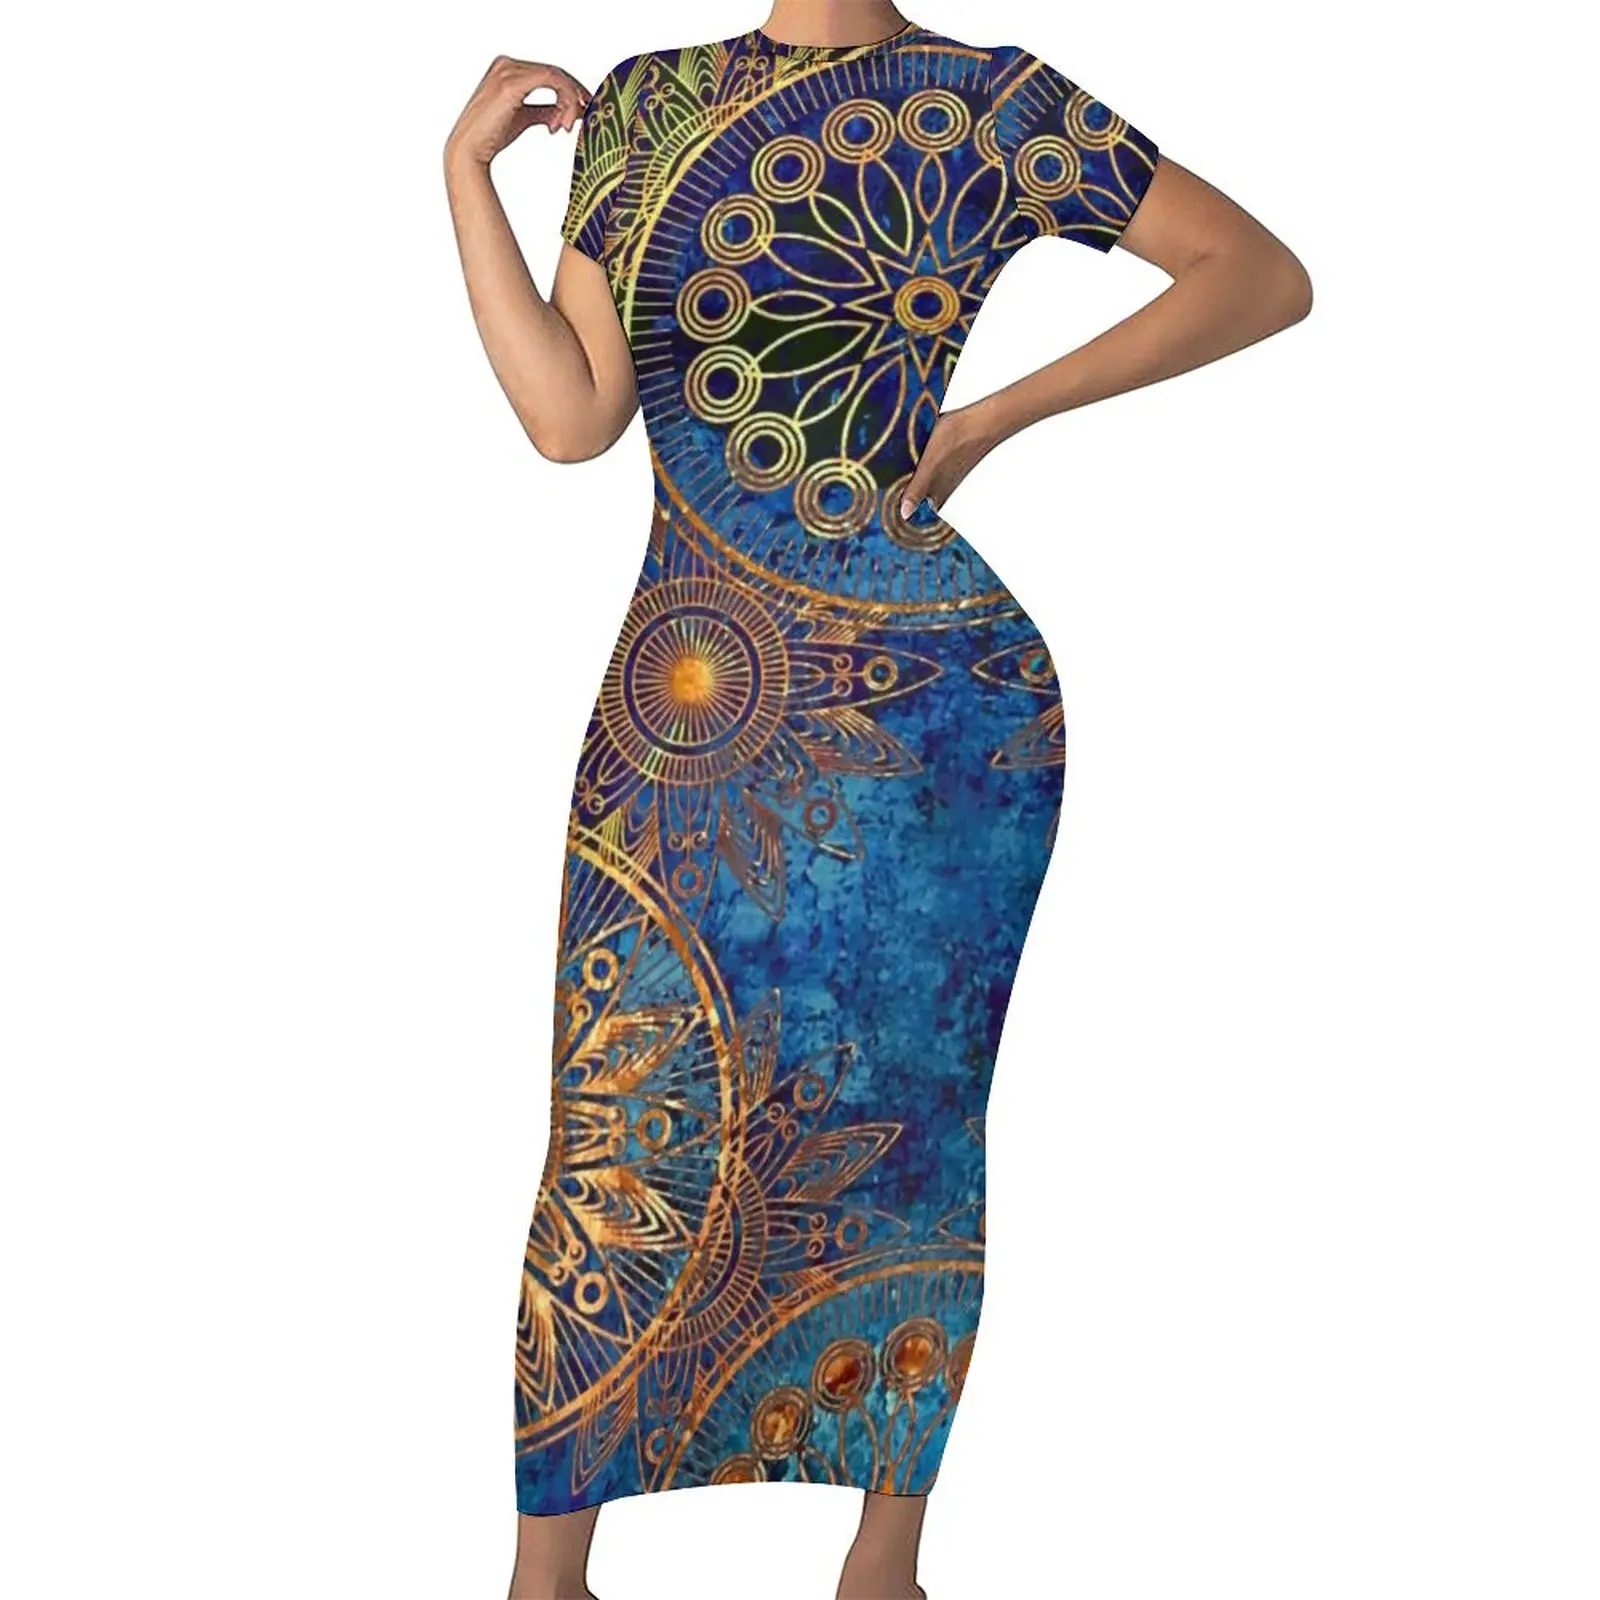 

Женское облегающее платье в стиле стимпанк Celestial, Синие сексуальные Макси-платья, весеннее уличное модное платье с коротким рукавом и графическим рисунком